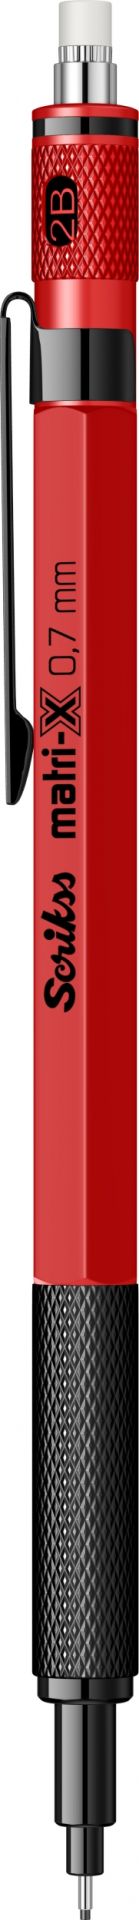 Scrikss Matri-x 0.7 Mekanik Uçlu Kalem - Kırmızı